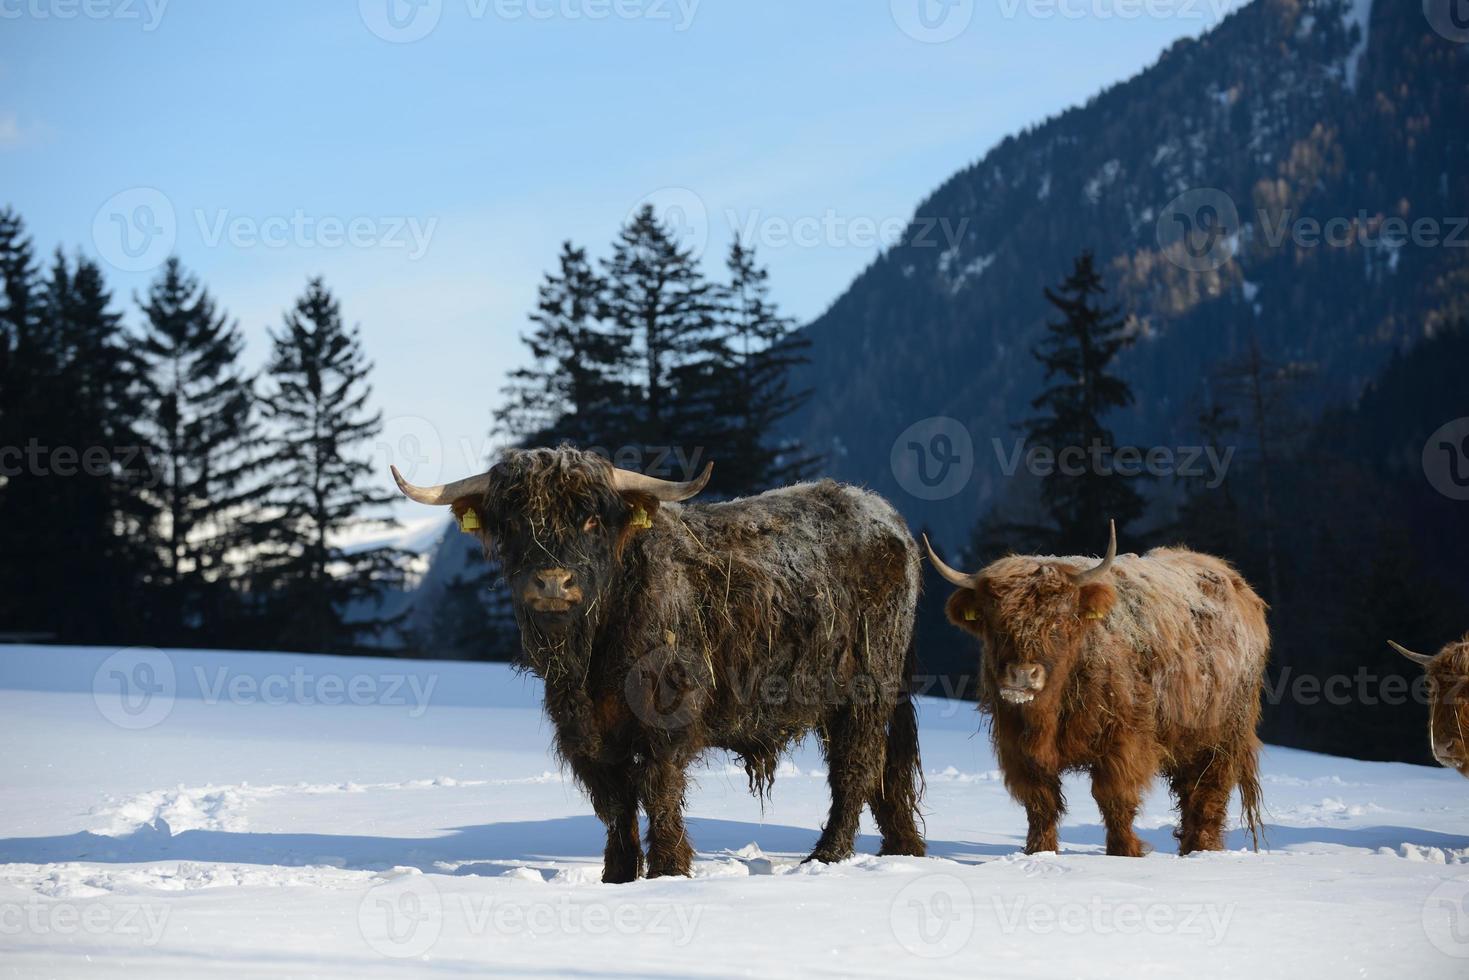 animale di vacca in inverno foto